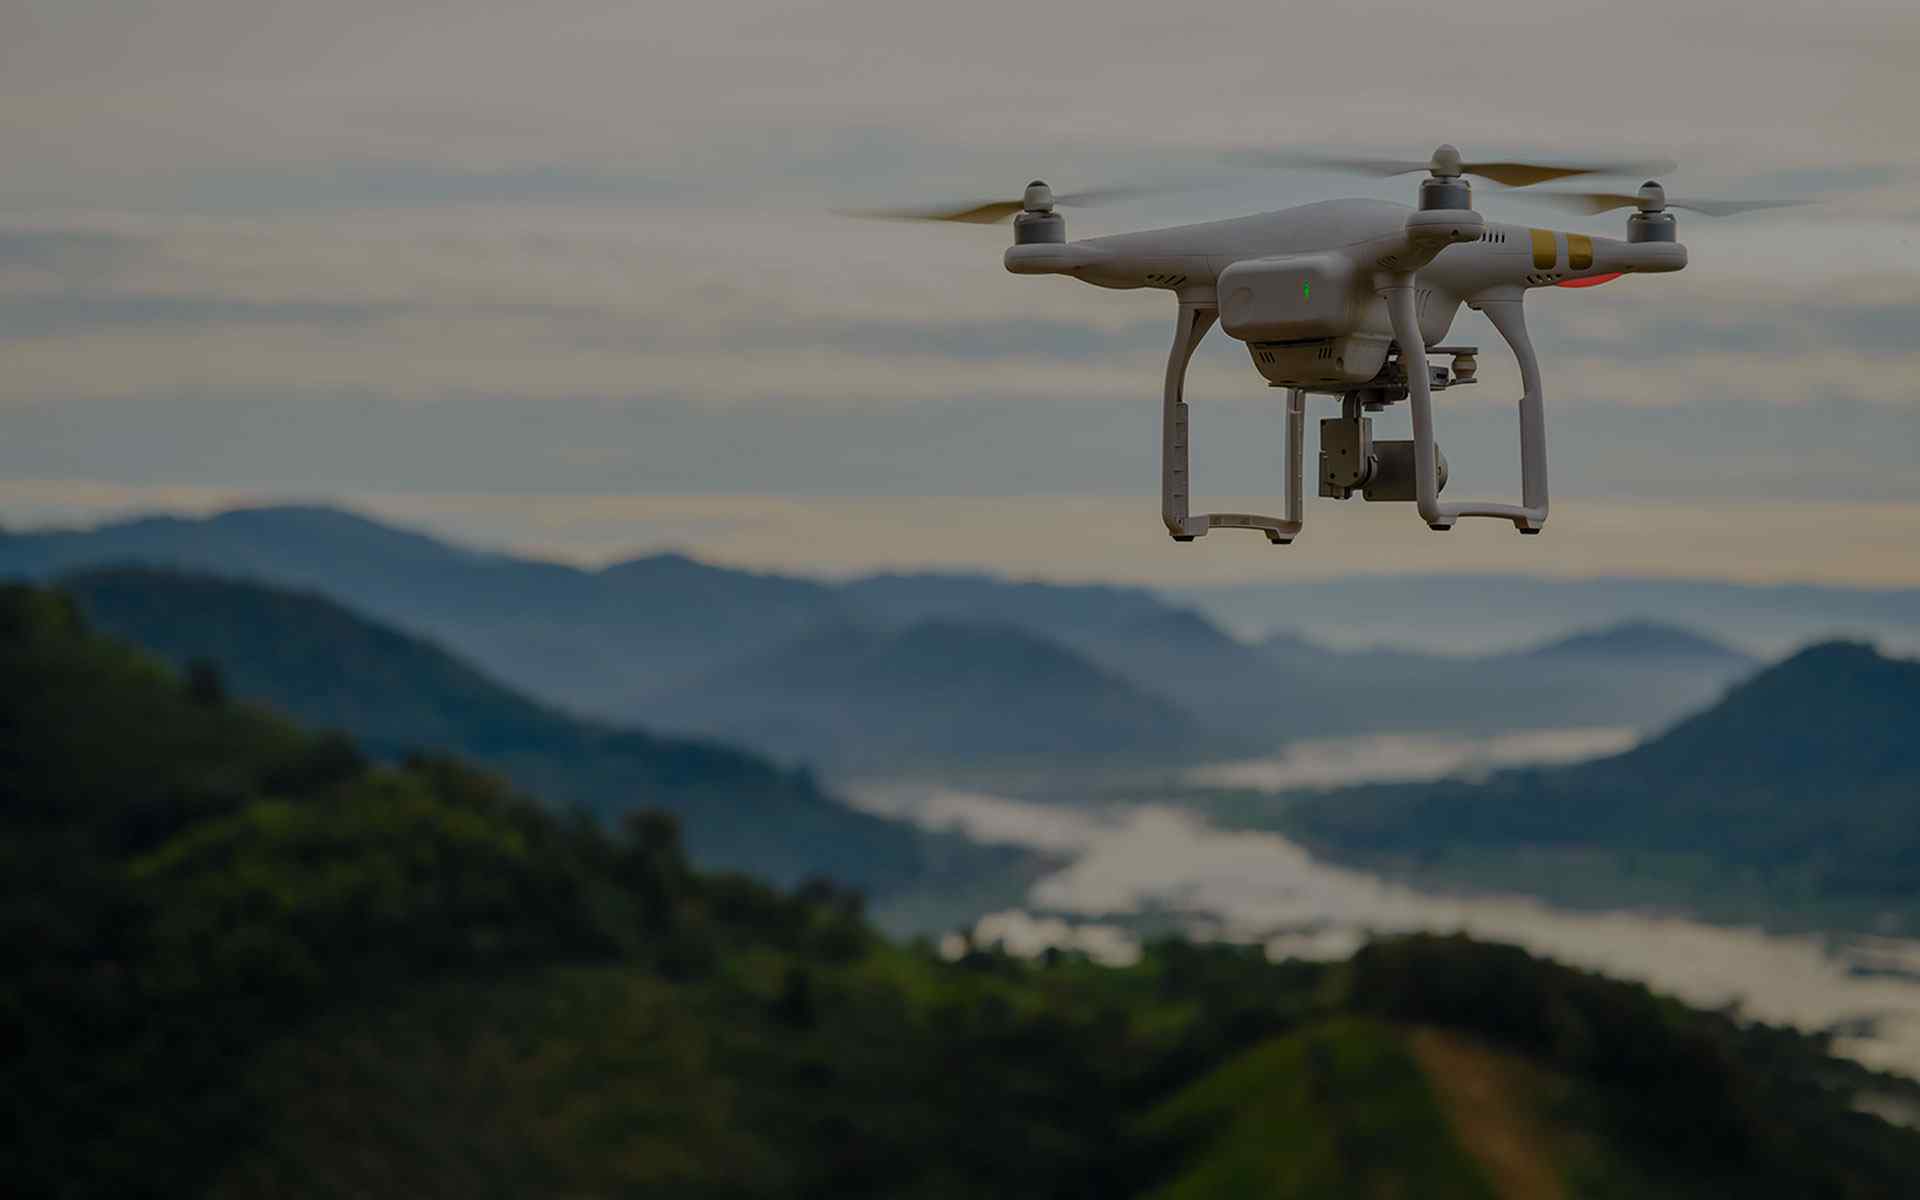 Snimanje dronom photo sky art